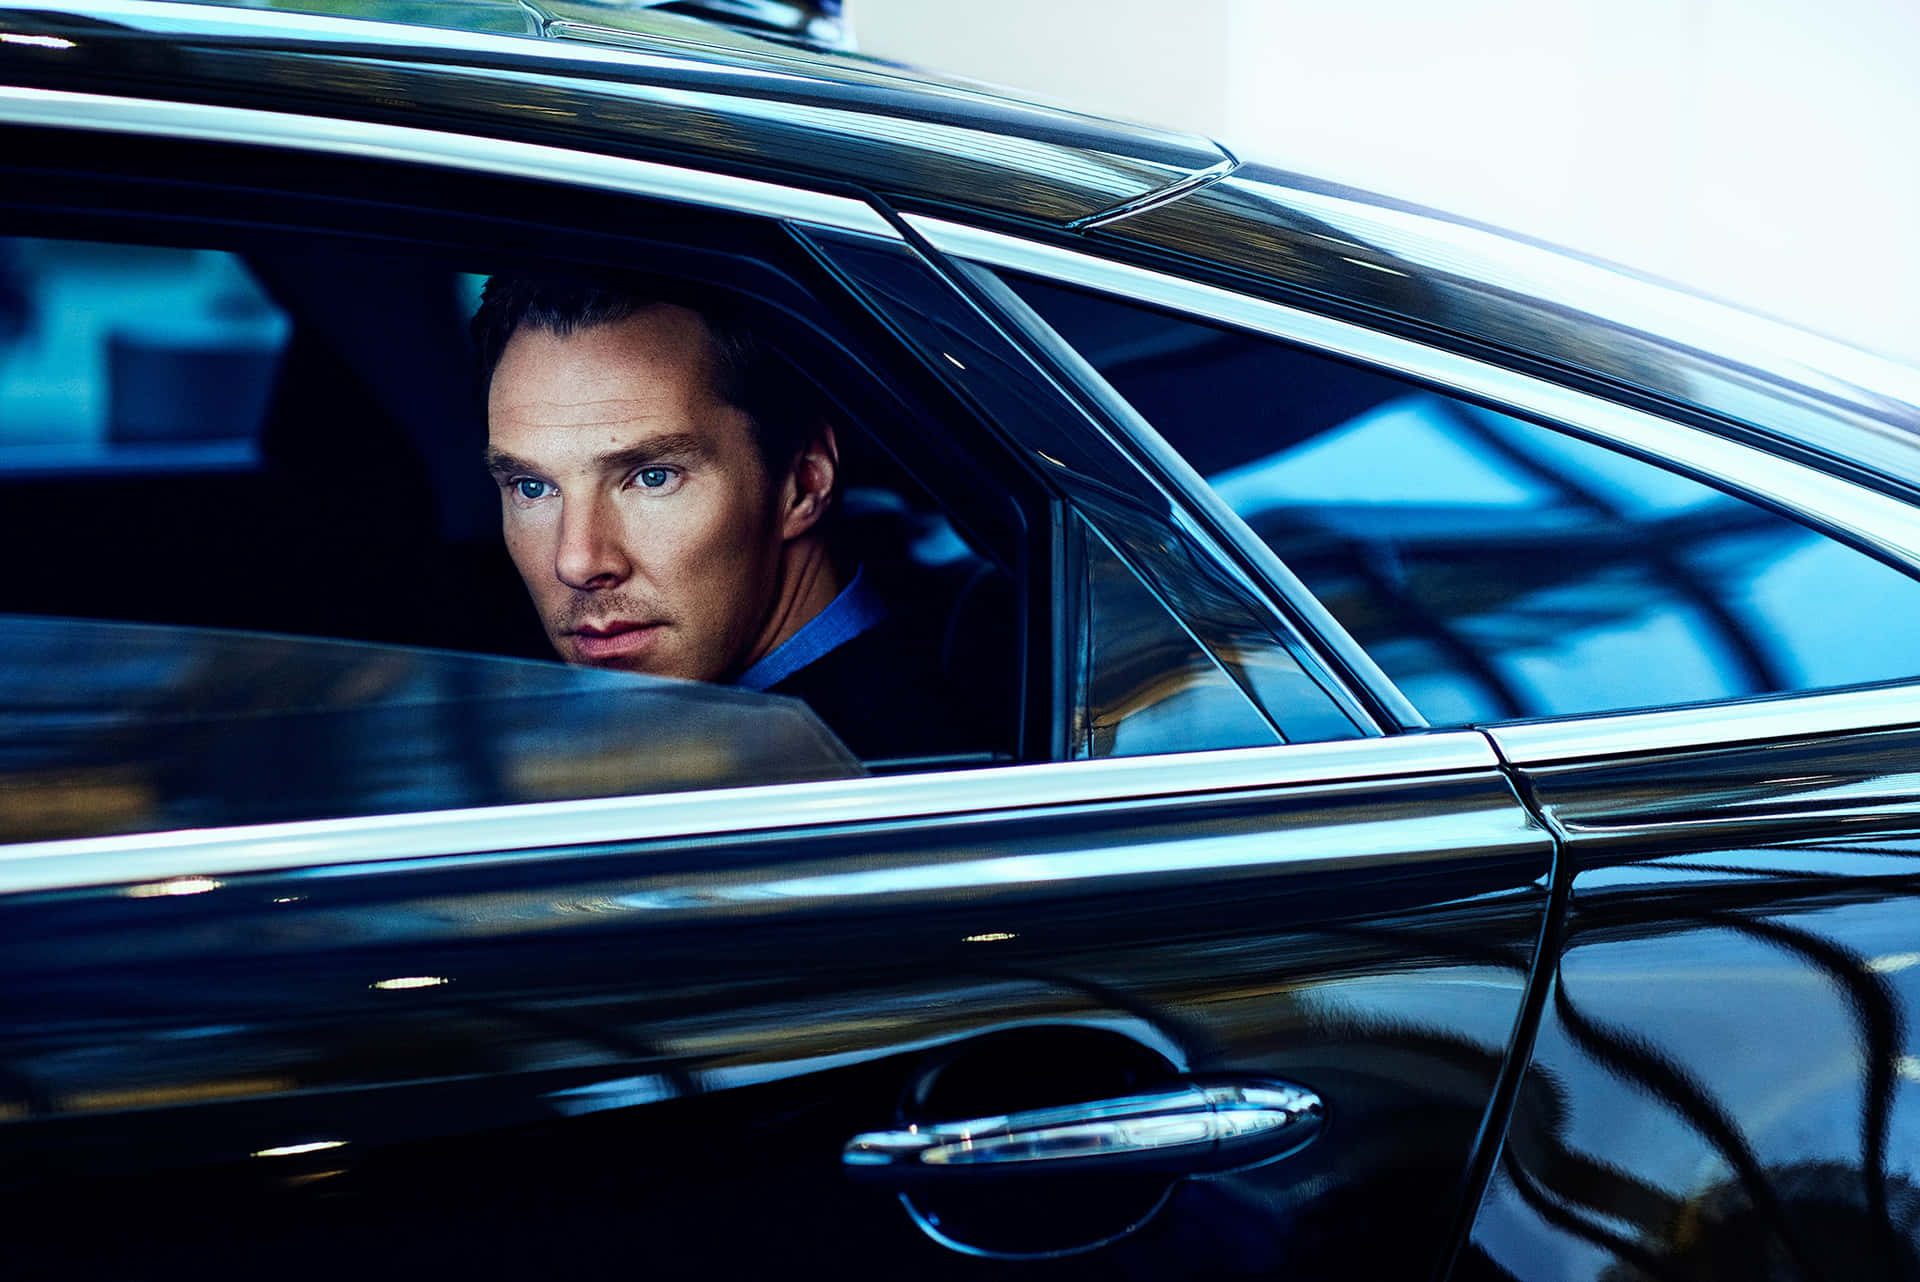 Benedict Cumberbatch Background